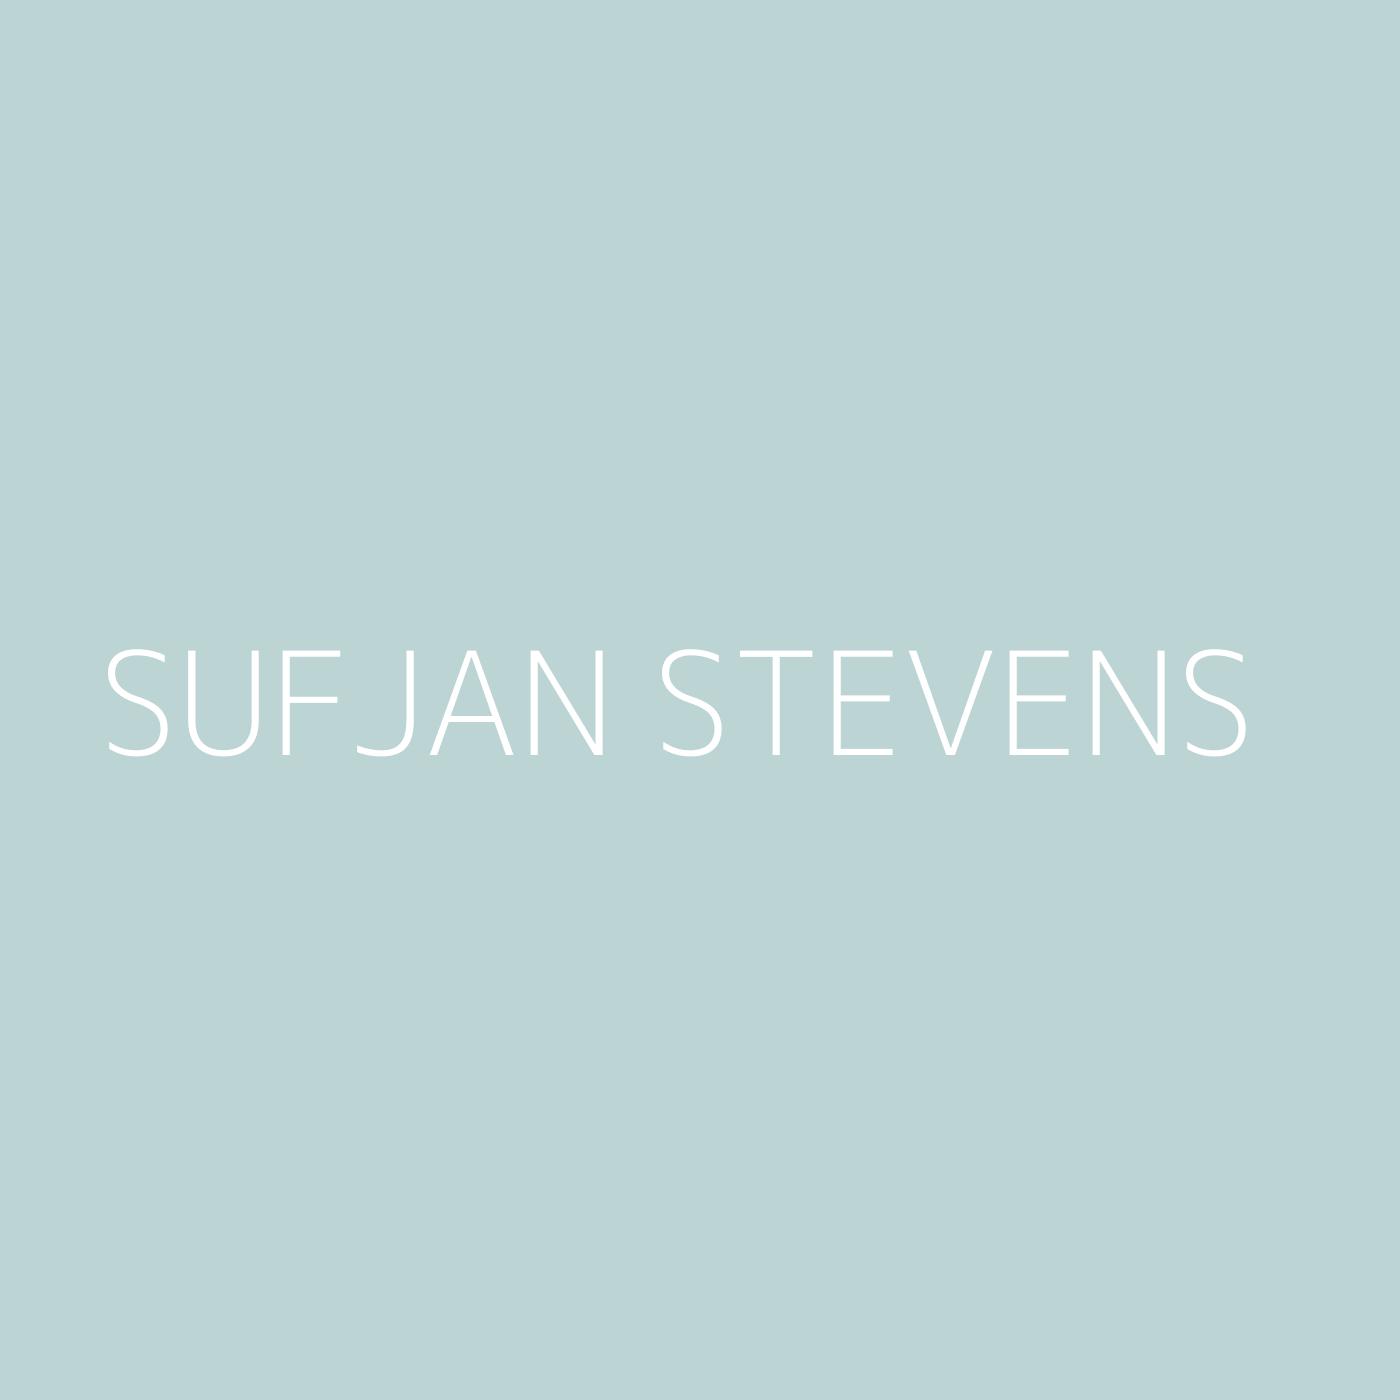 Sufjan Stevens Playlist Artwork